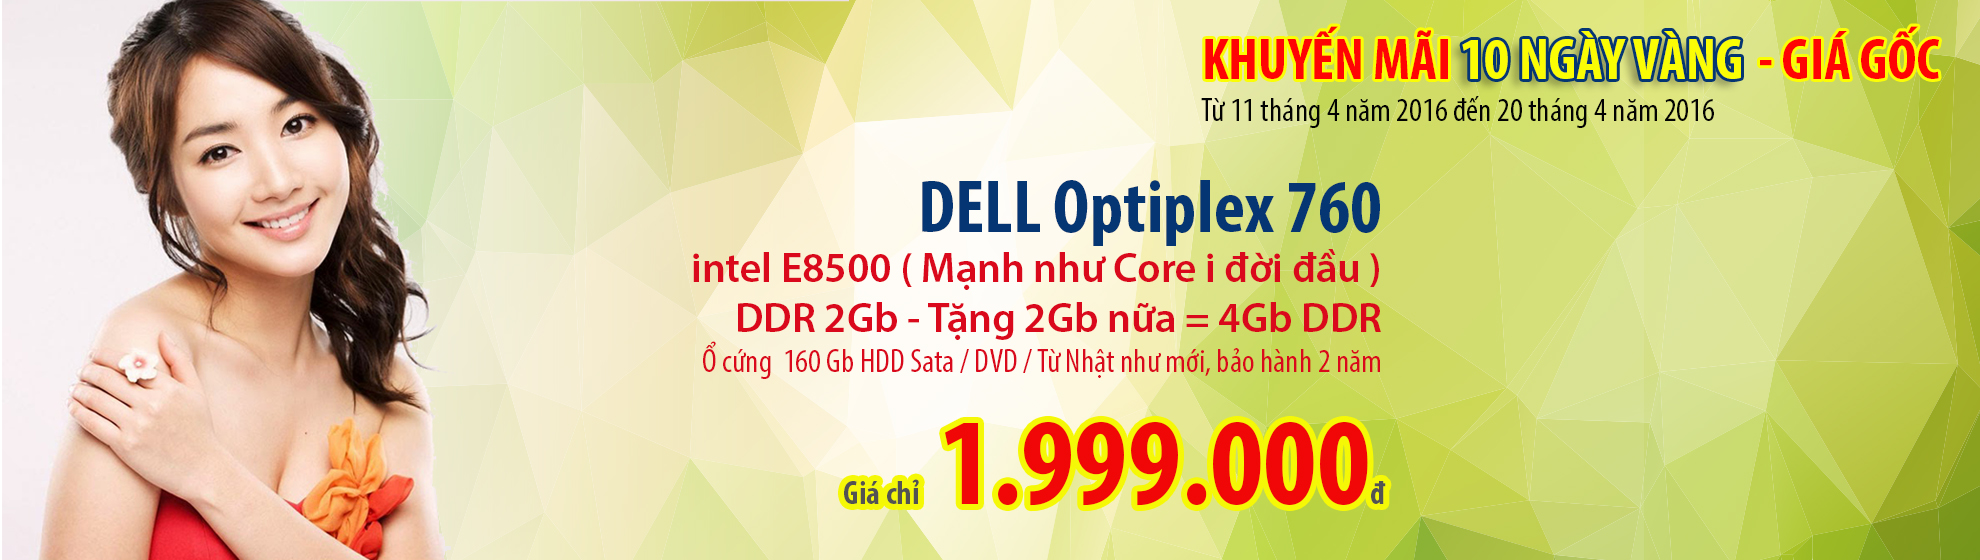 Dell Optiplex 760, 10 ngày khuyến mãi, giá gốc.